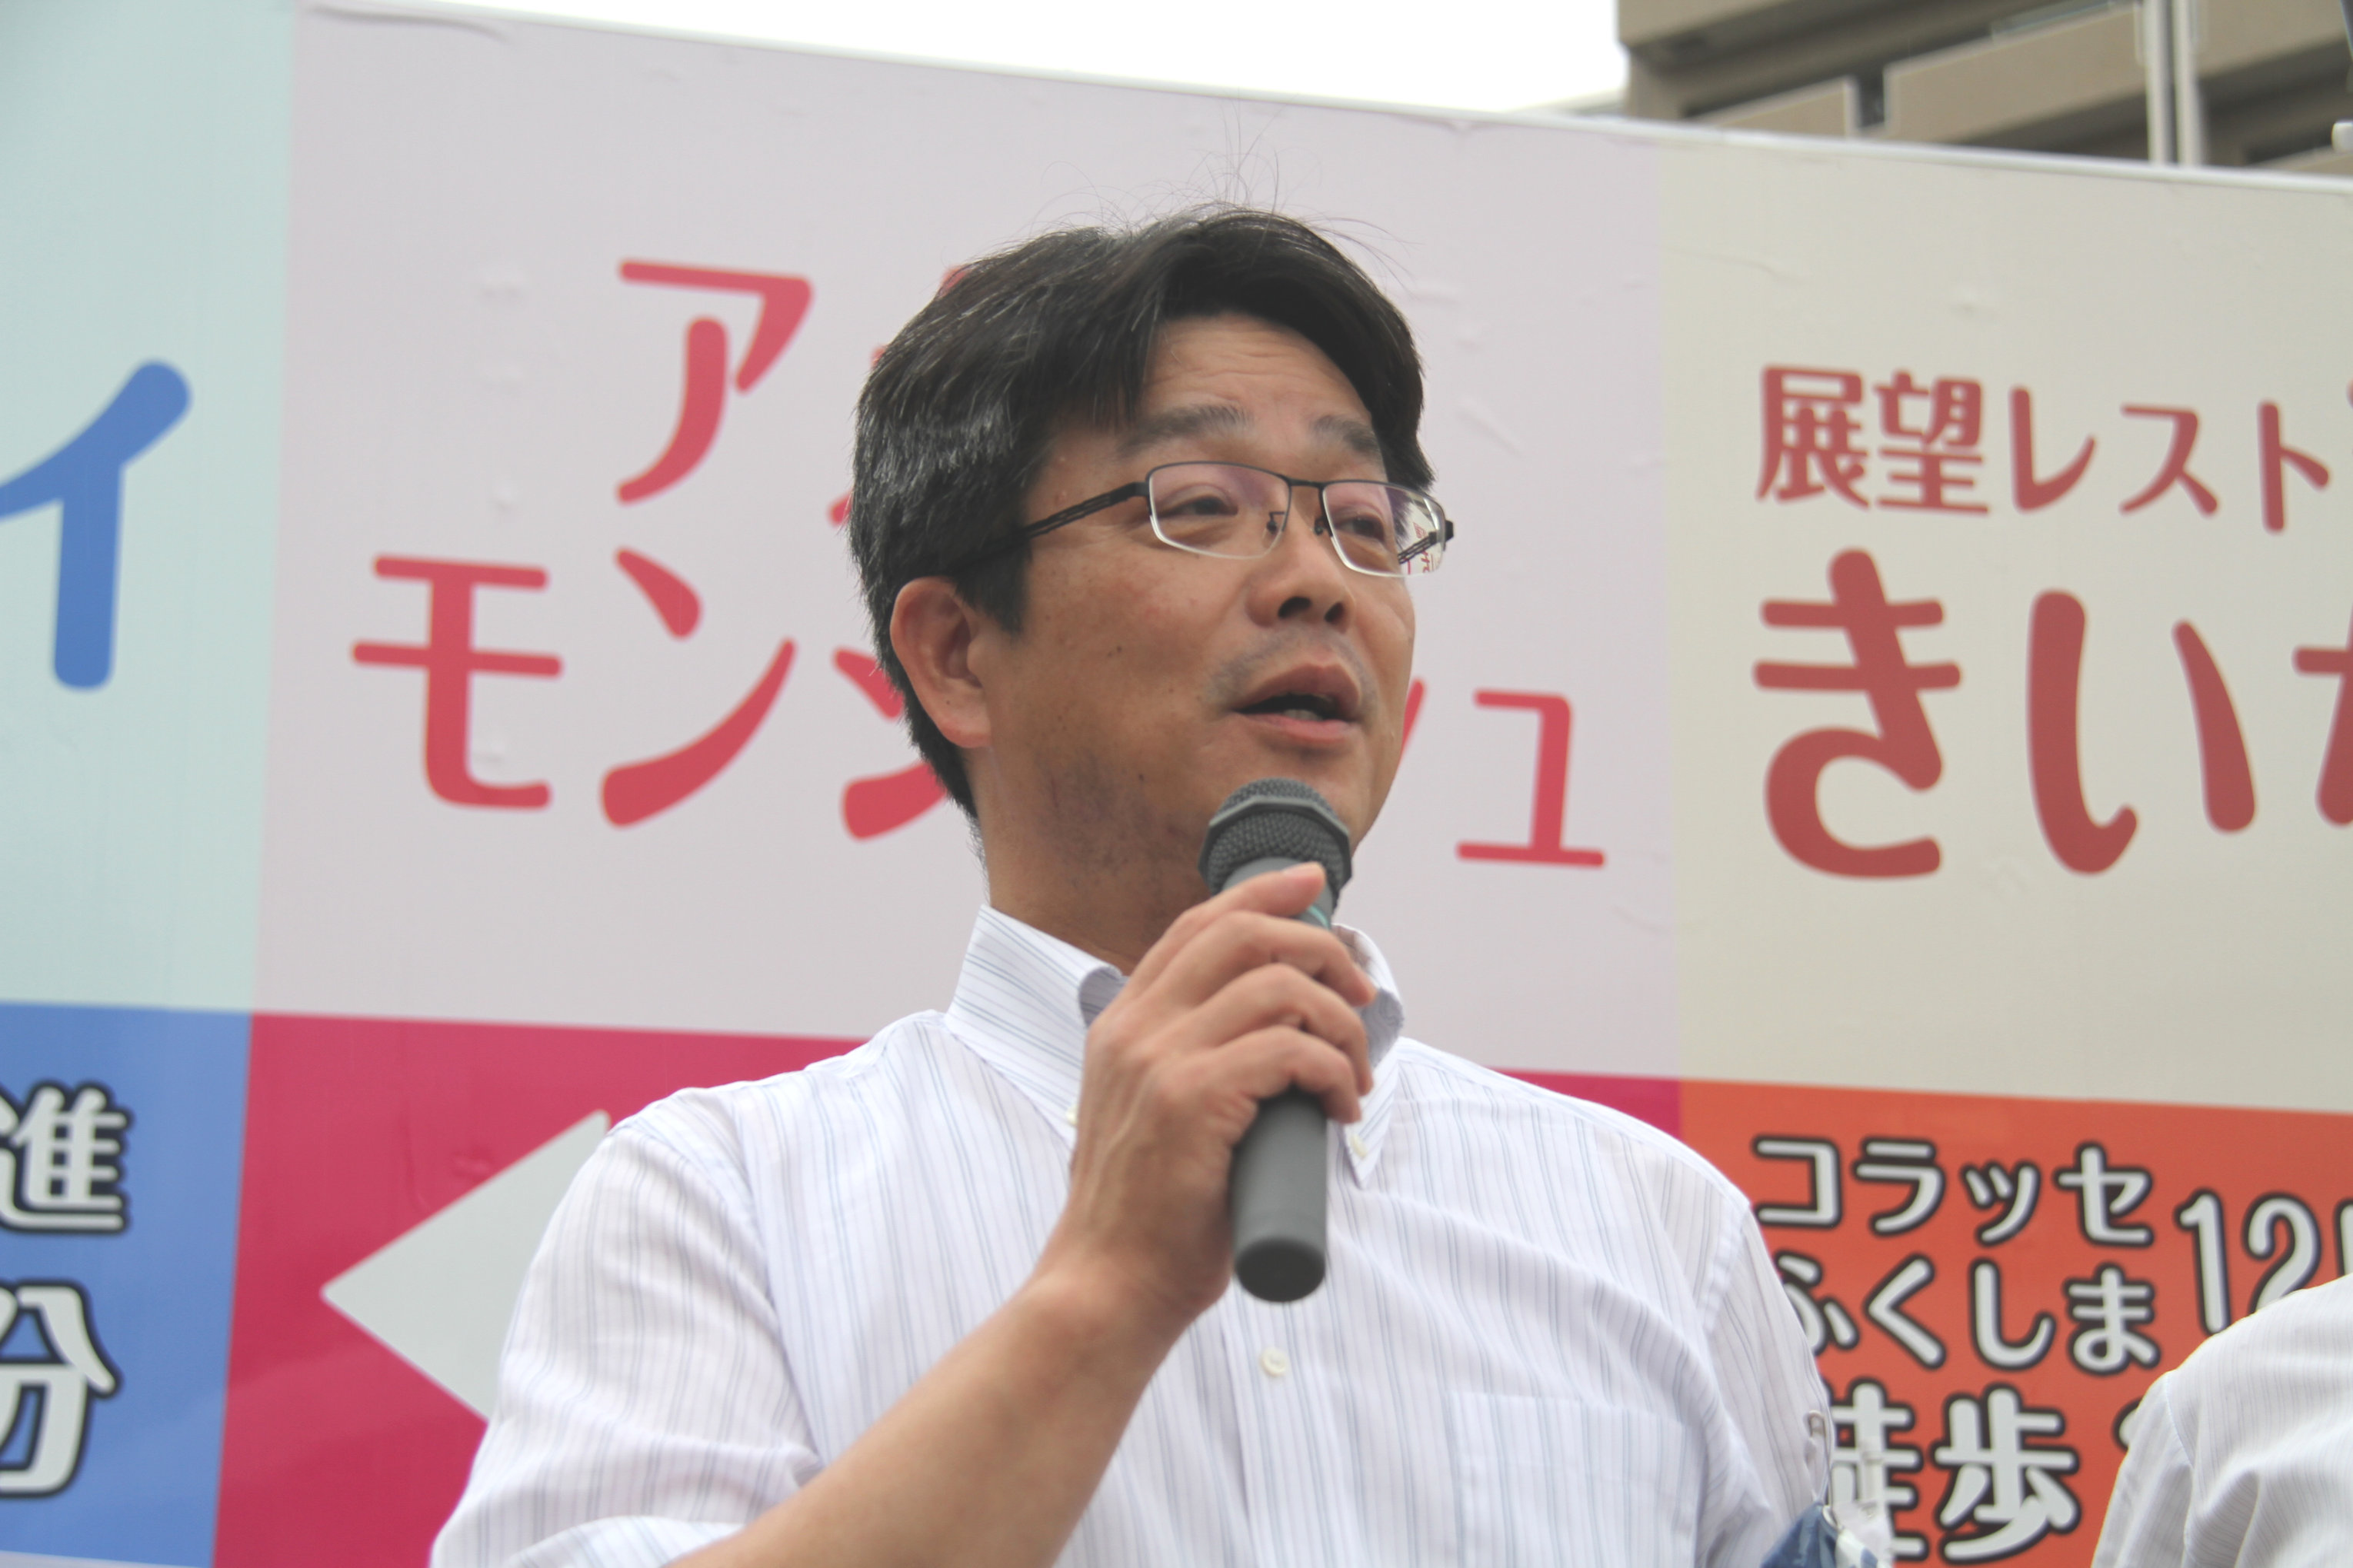 応援団の取り組み「最低賃金の引上げ」について訴える 生亀勝行 連合福島副会長